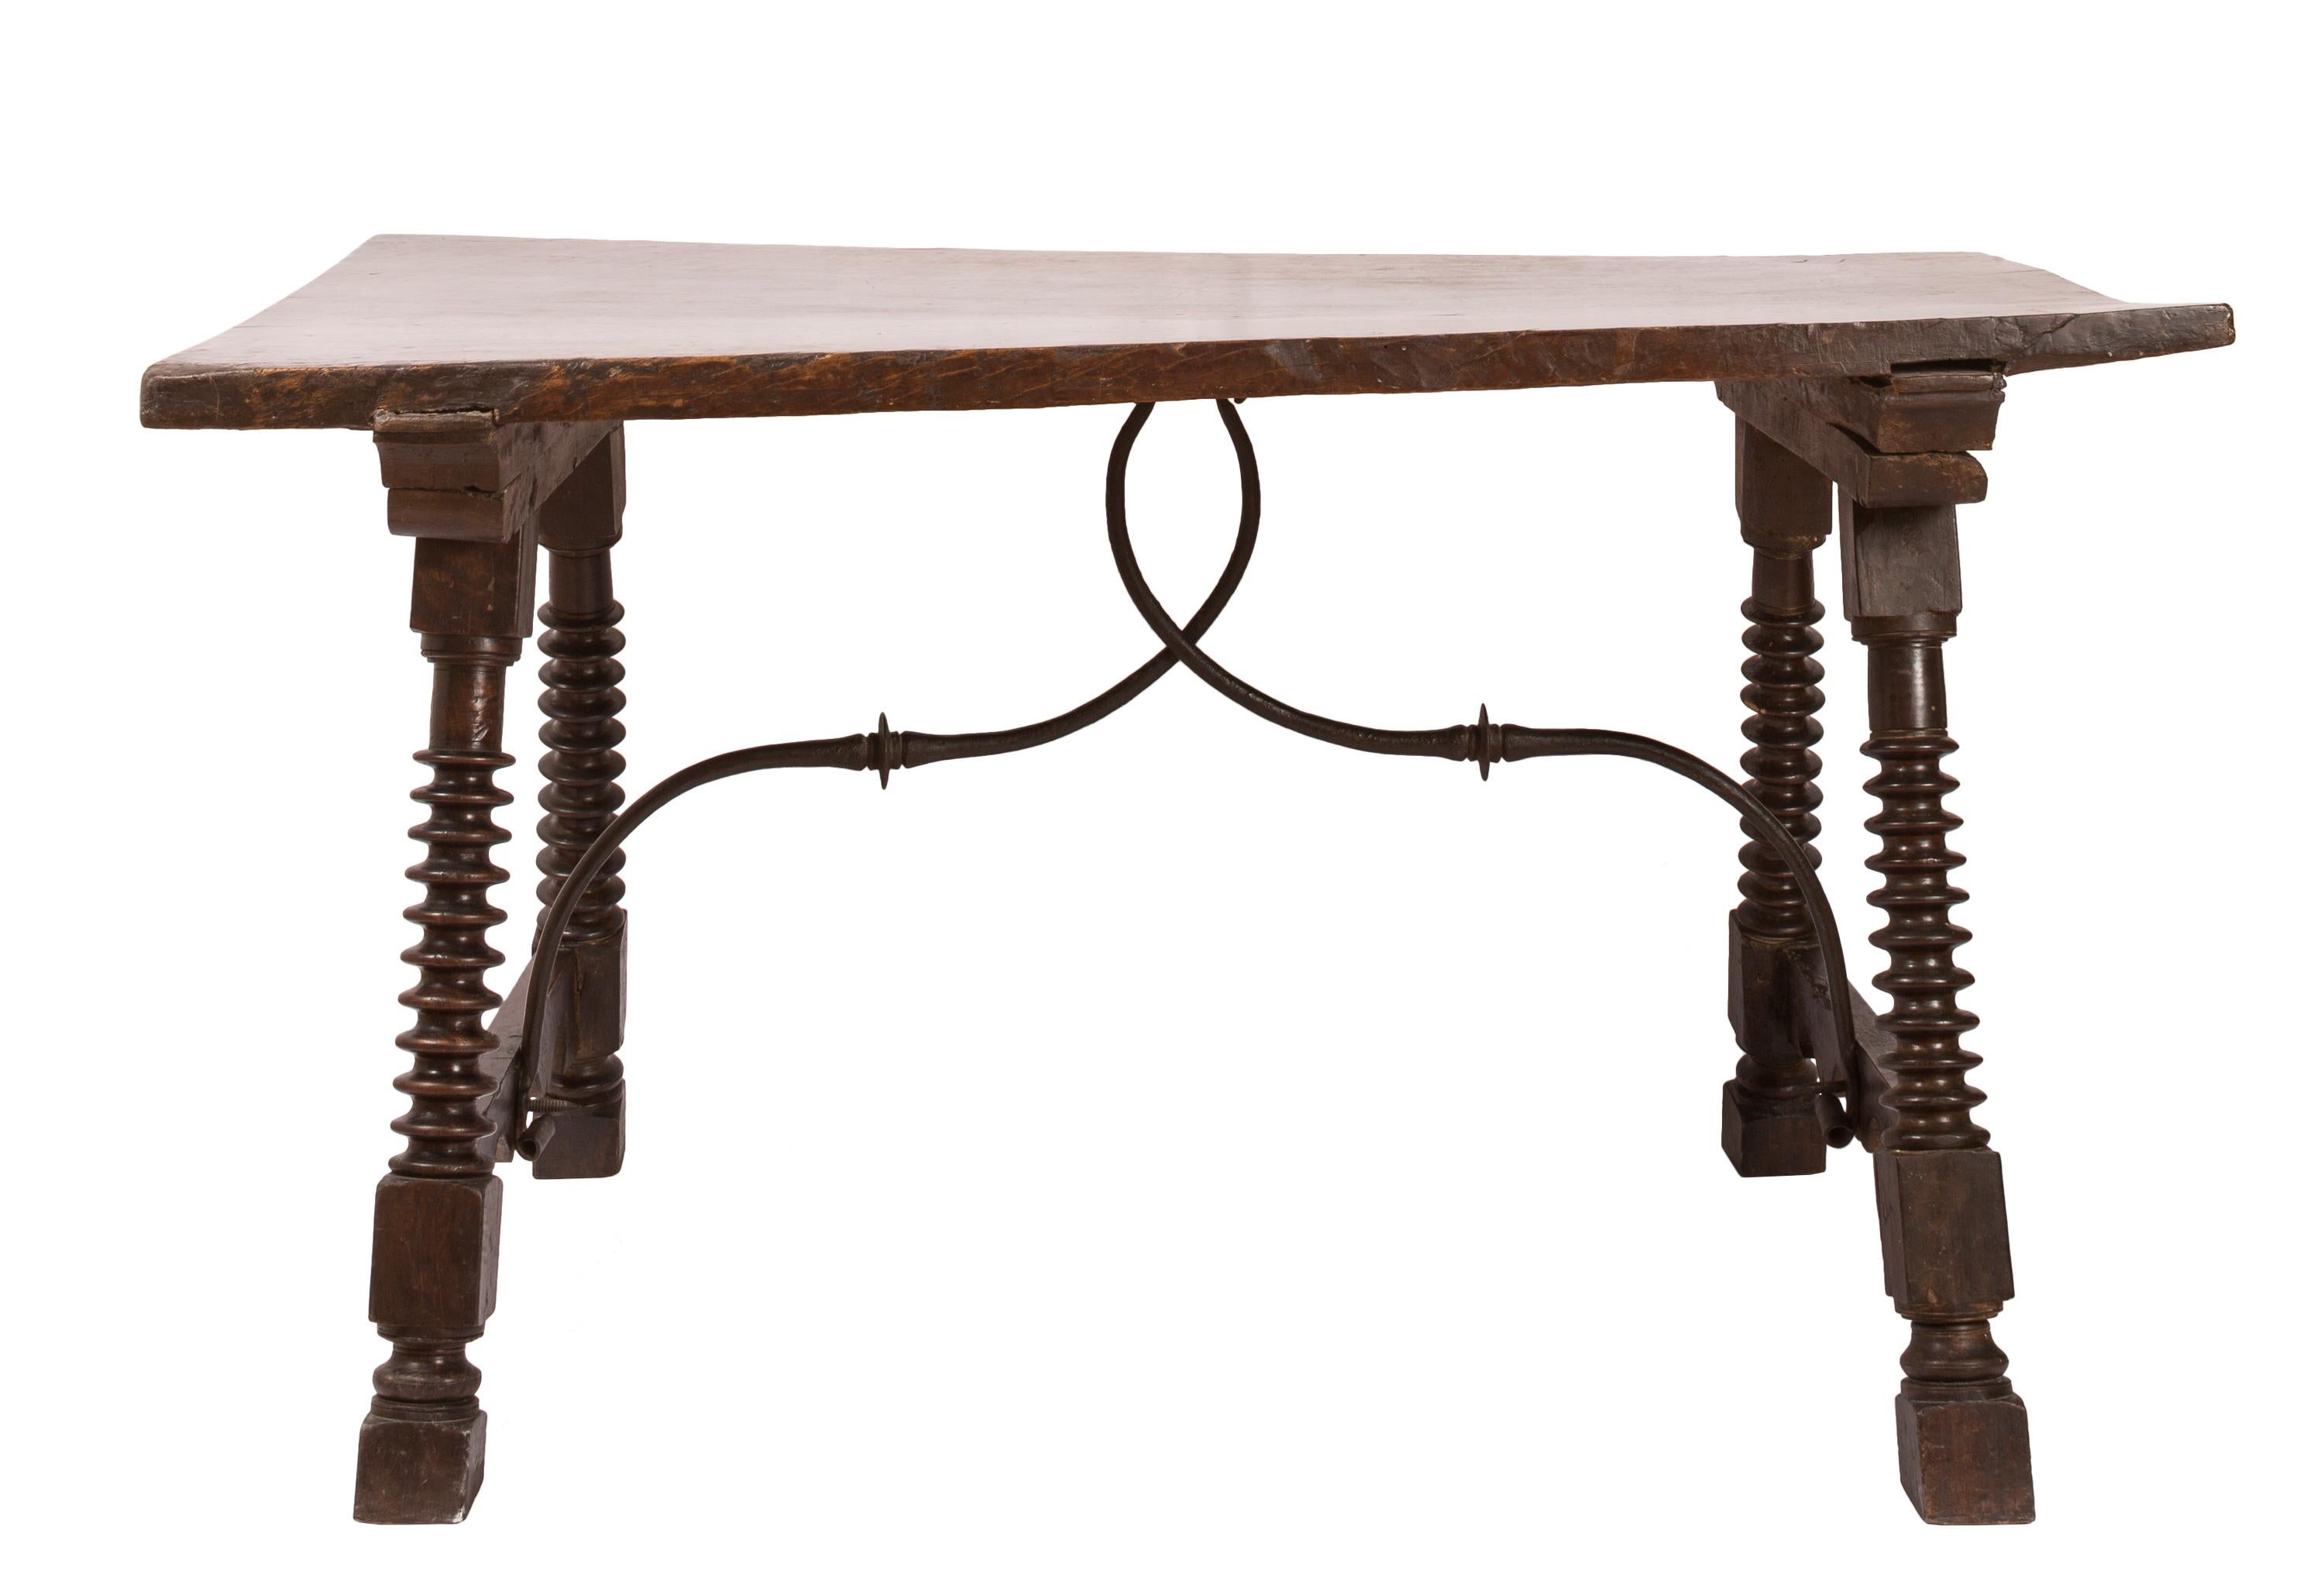 Le plateau de cette table espagnole du XVIIIe siècle est constitué d'une seule planche large qui, au fil des ans, s'est légèrement déformée, ajoutant une touche attrayante à la surface et créant un meuble au caractère unique. Les pieds tournés, ou